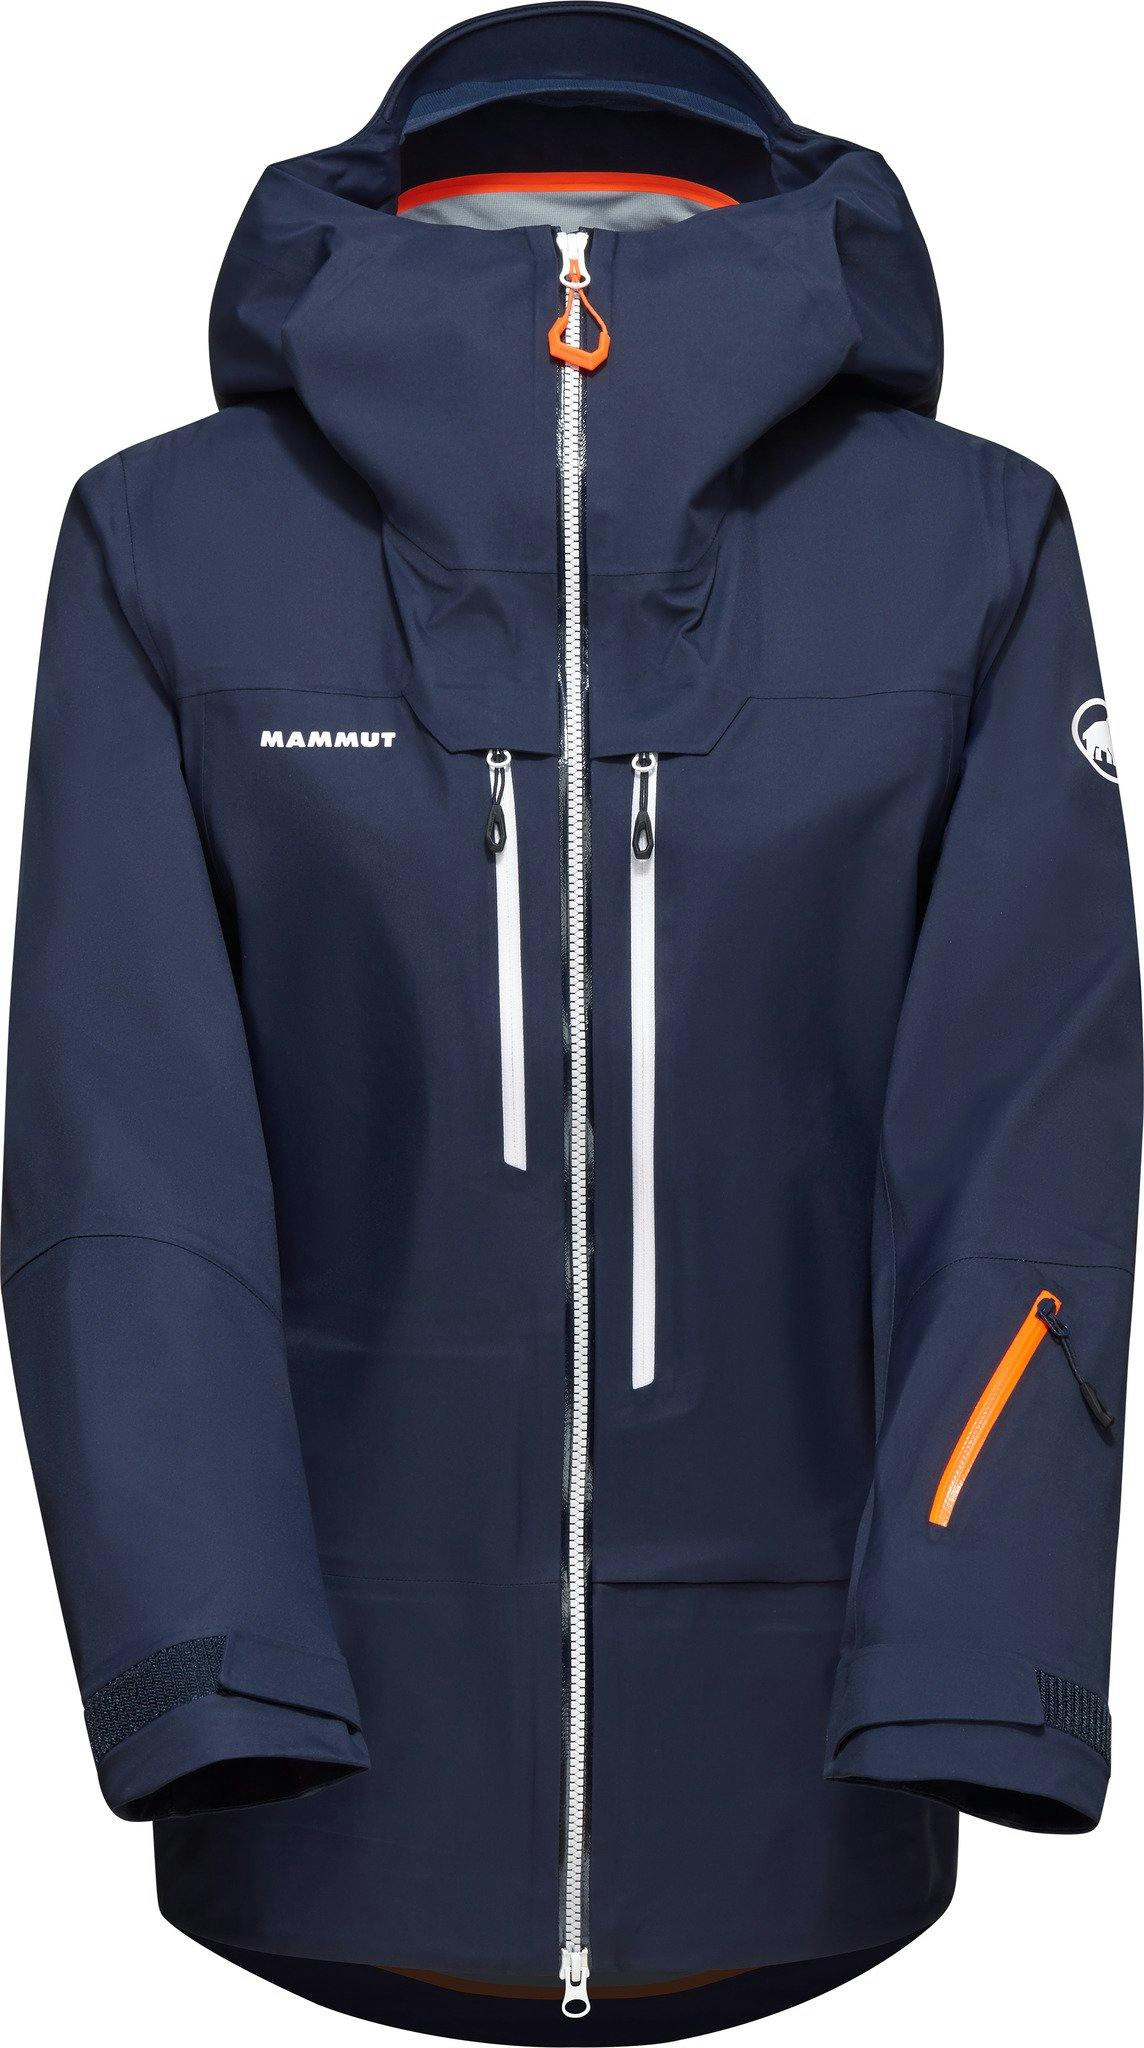 Product image for Haldigrat Air Hardshell Hooded Jacket - Women's